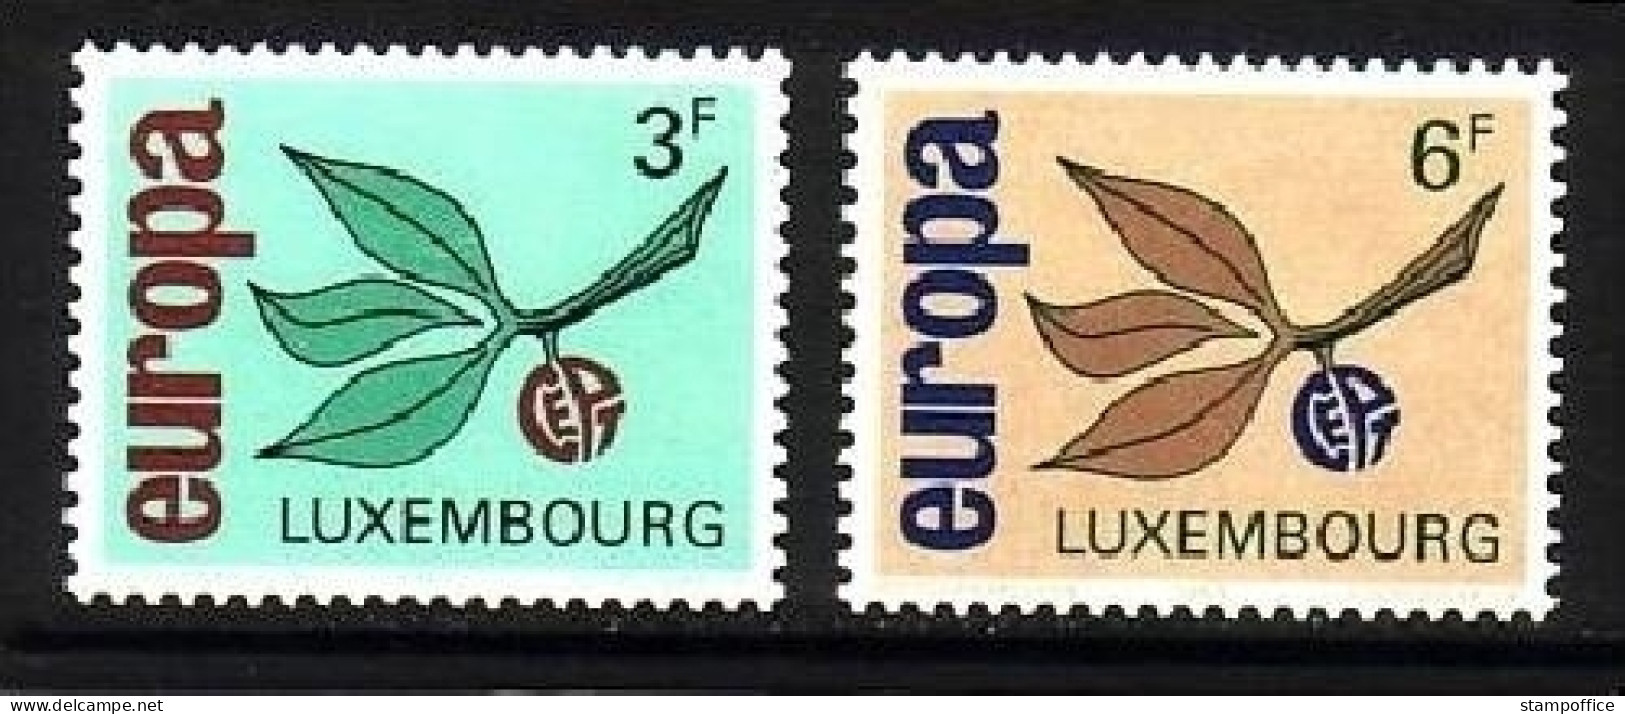 LUXEMBOURG MI-NR. 715-716 POSTFRISCH(MINT) EUROPA 1965 - ZWEIG - 1965